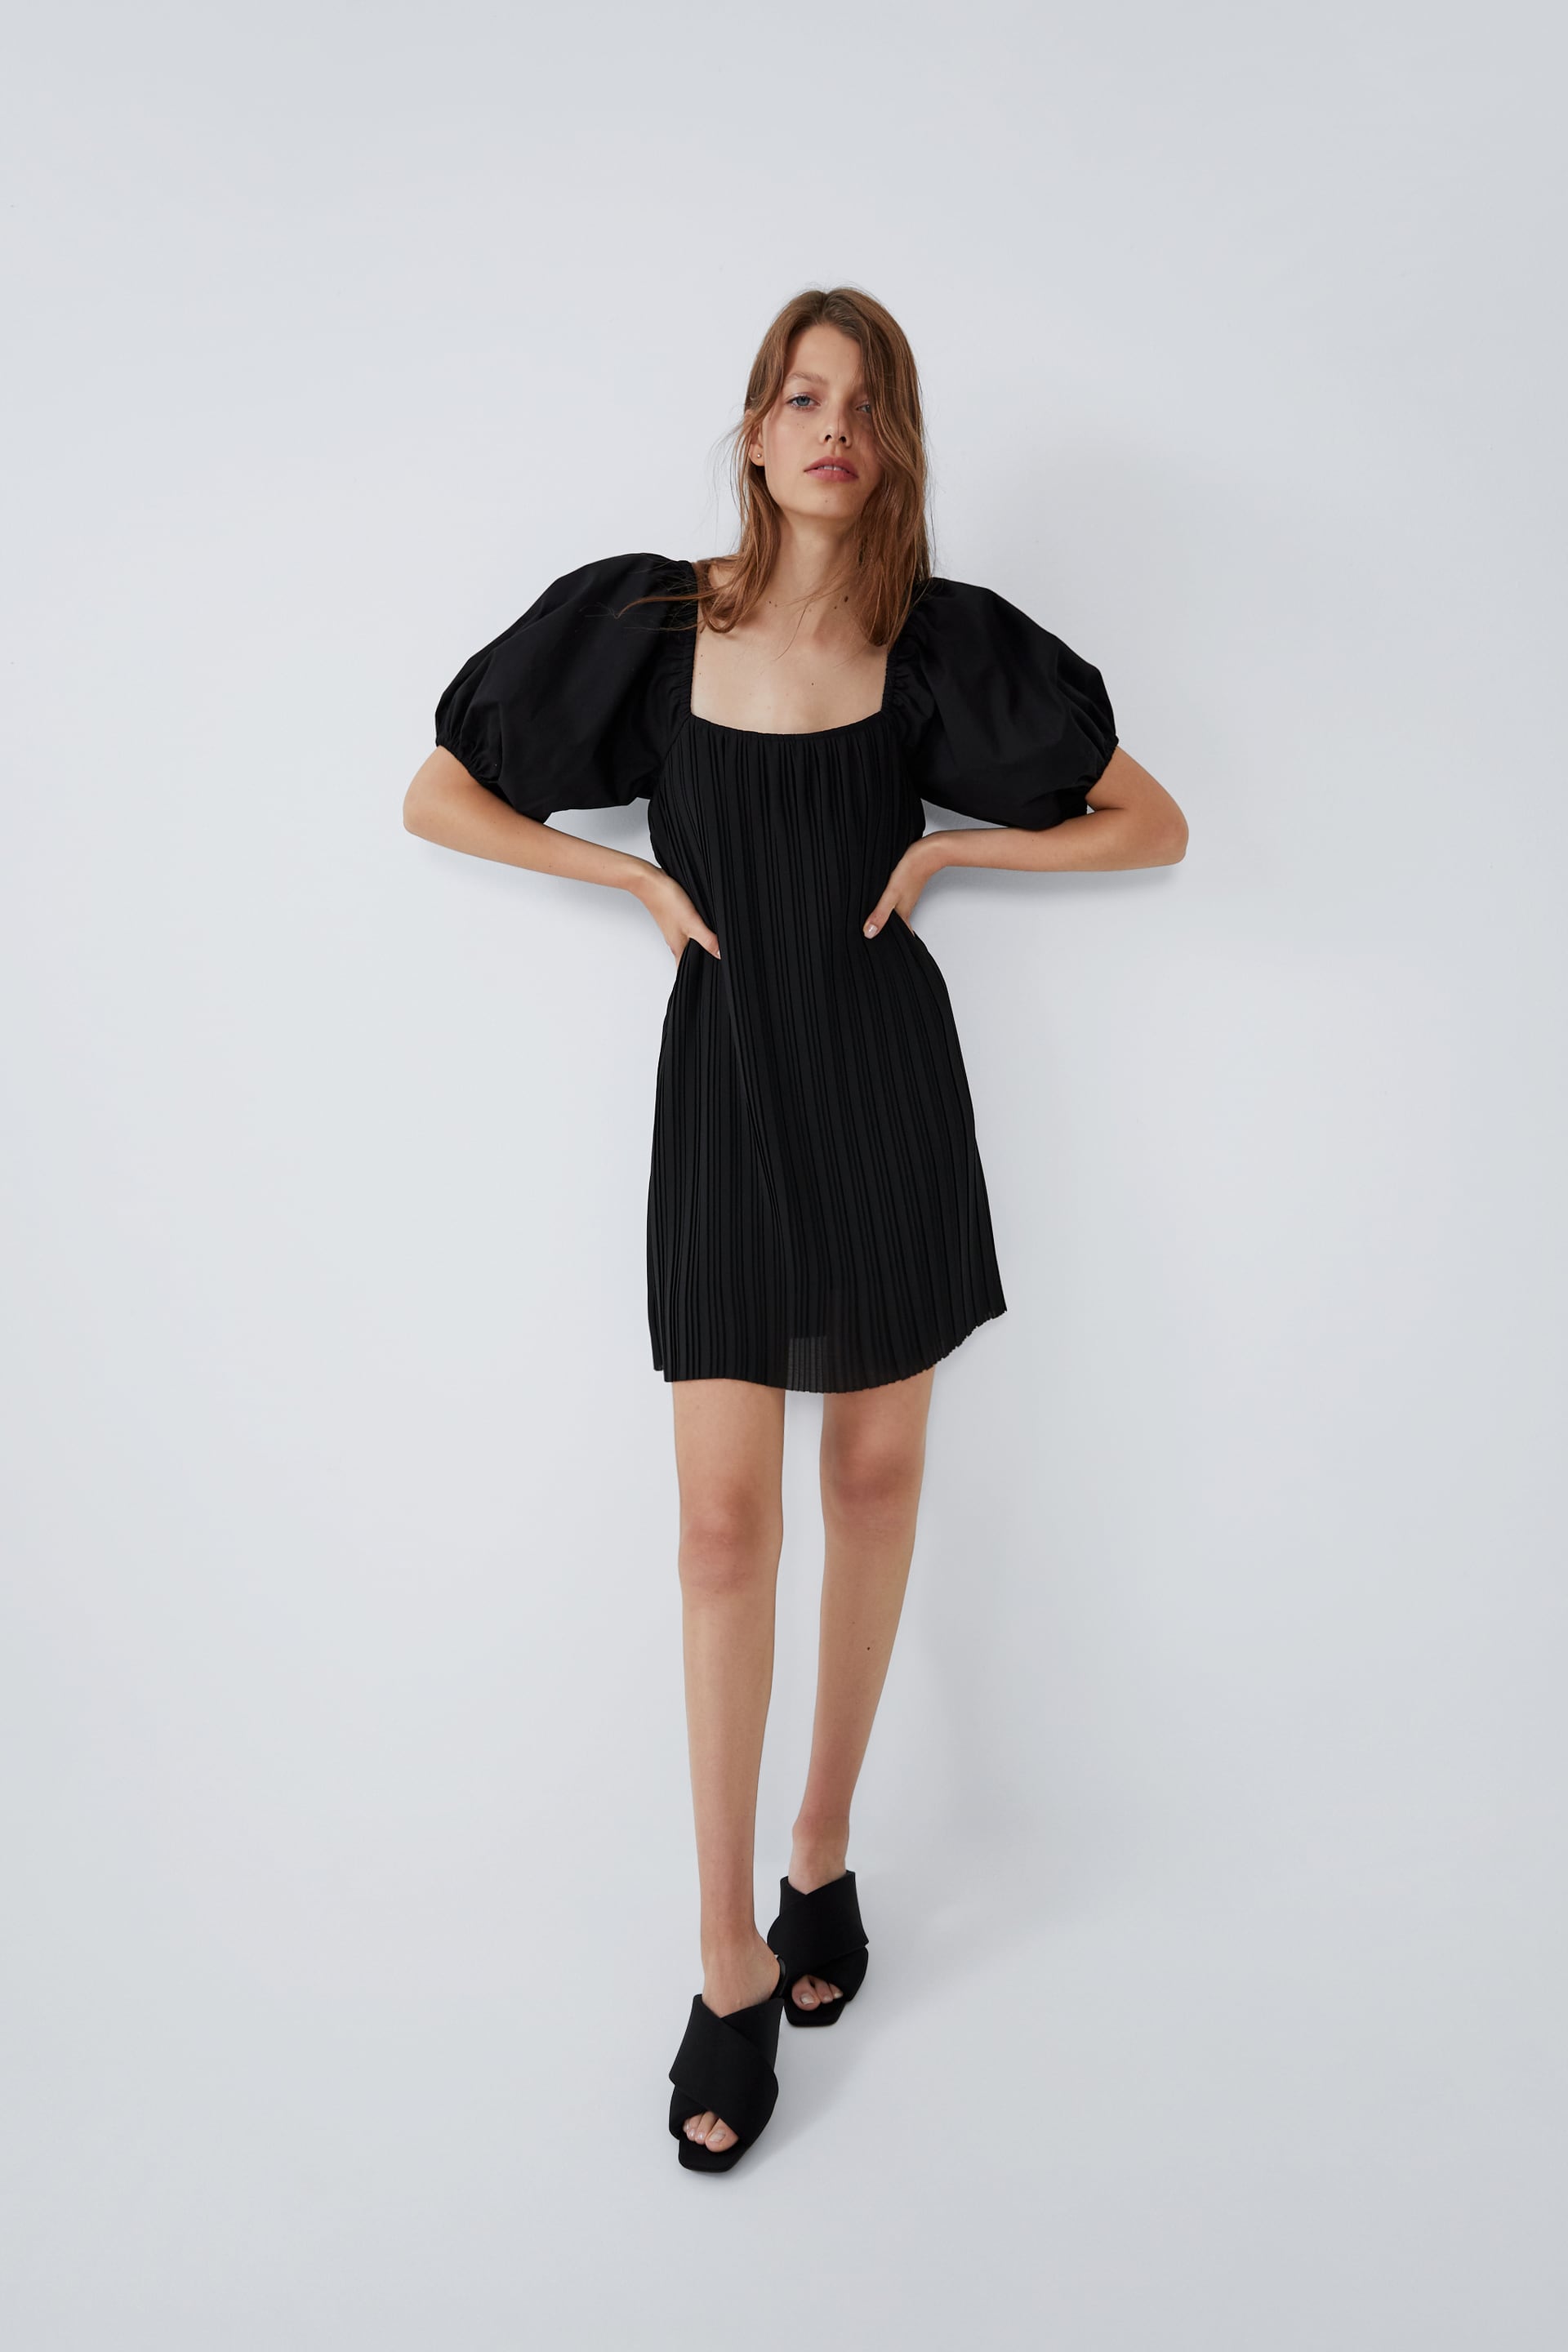 Buy > zara black poplin dress > in stock